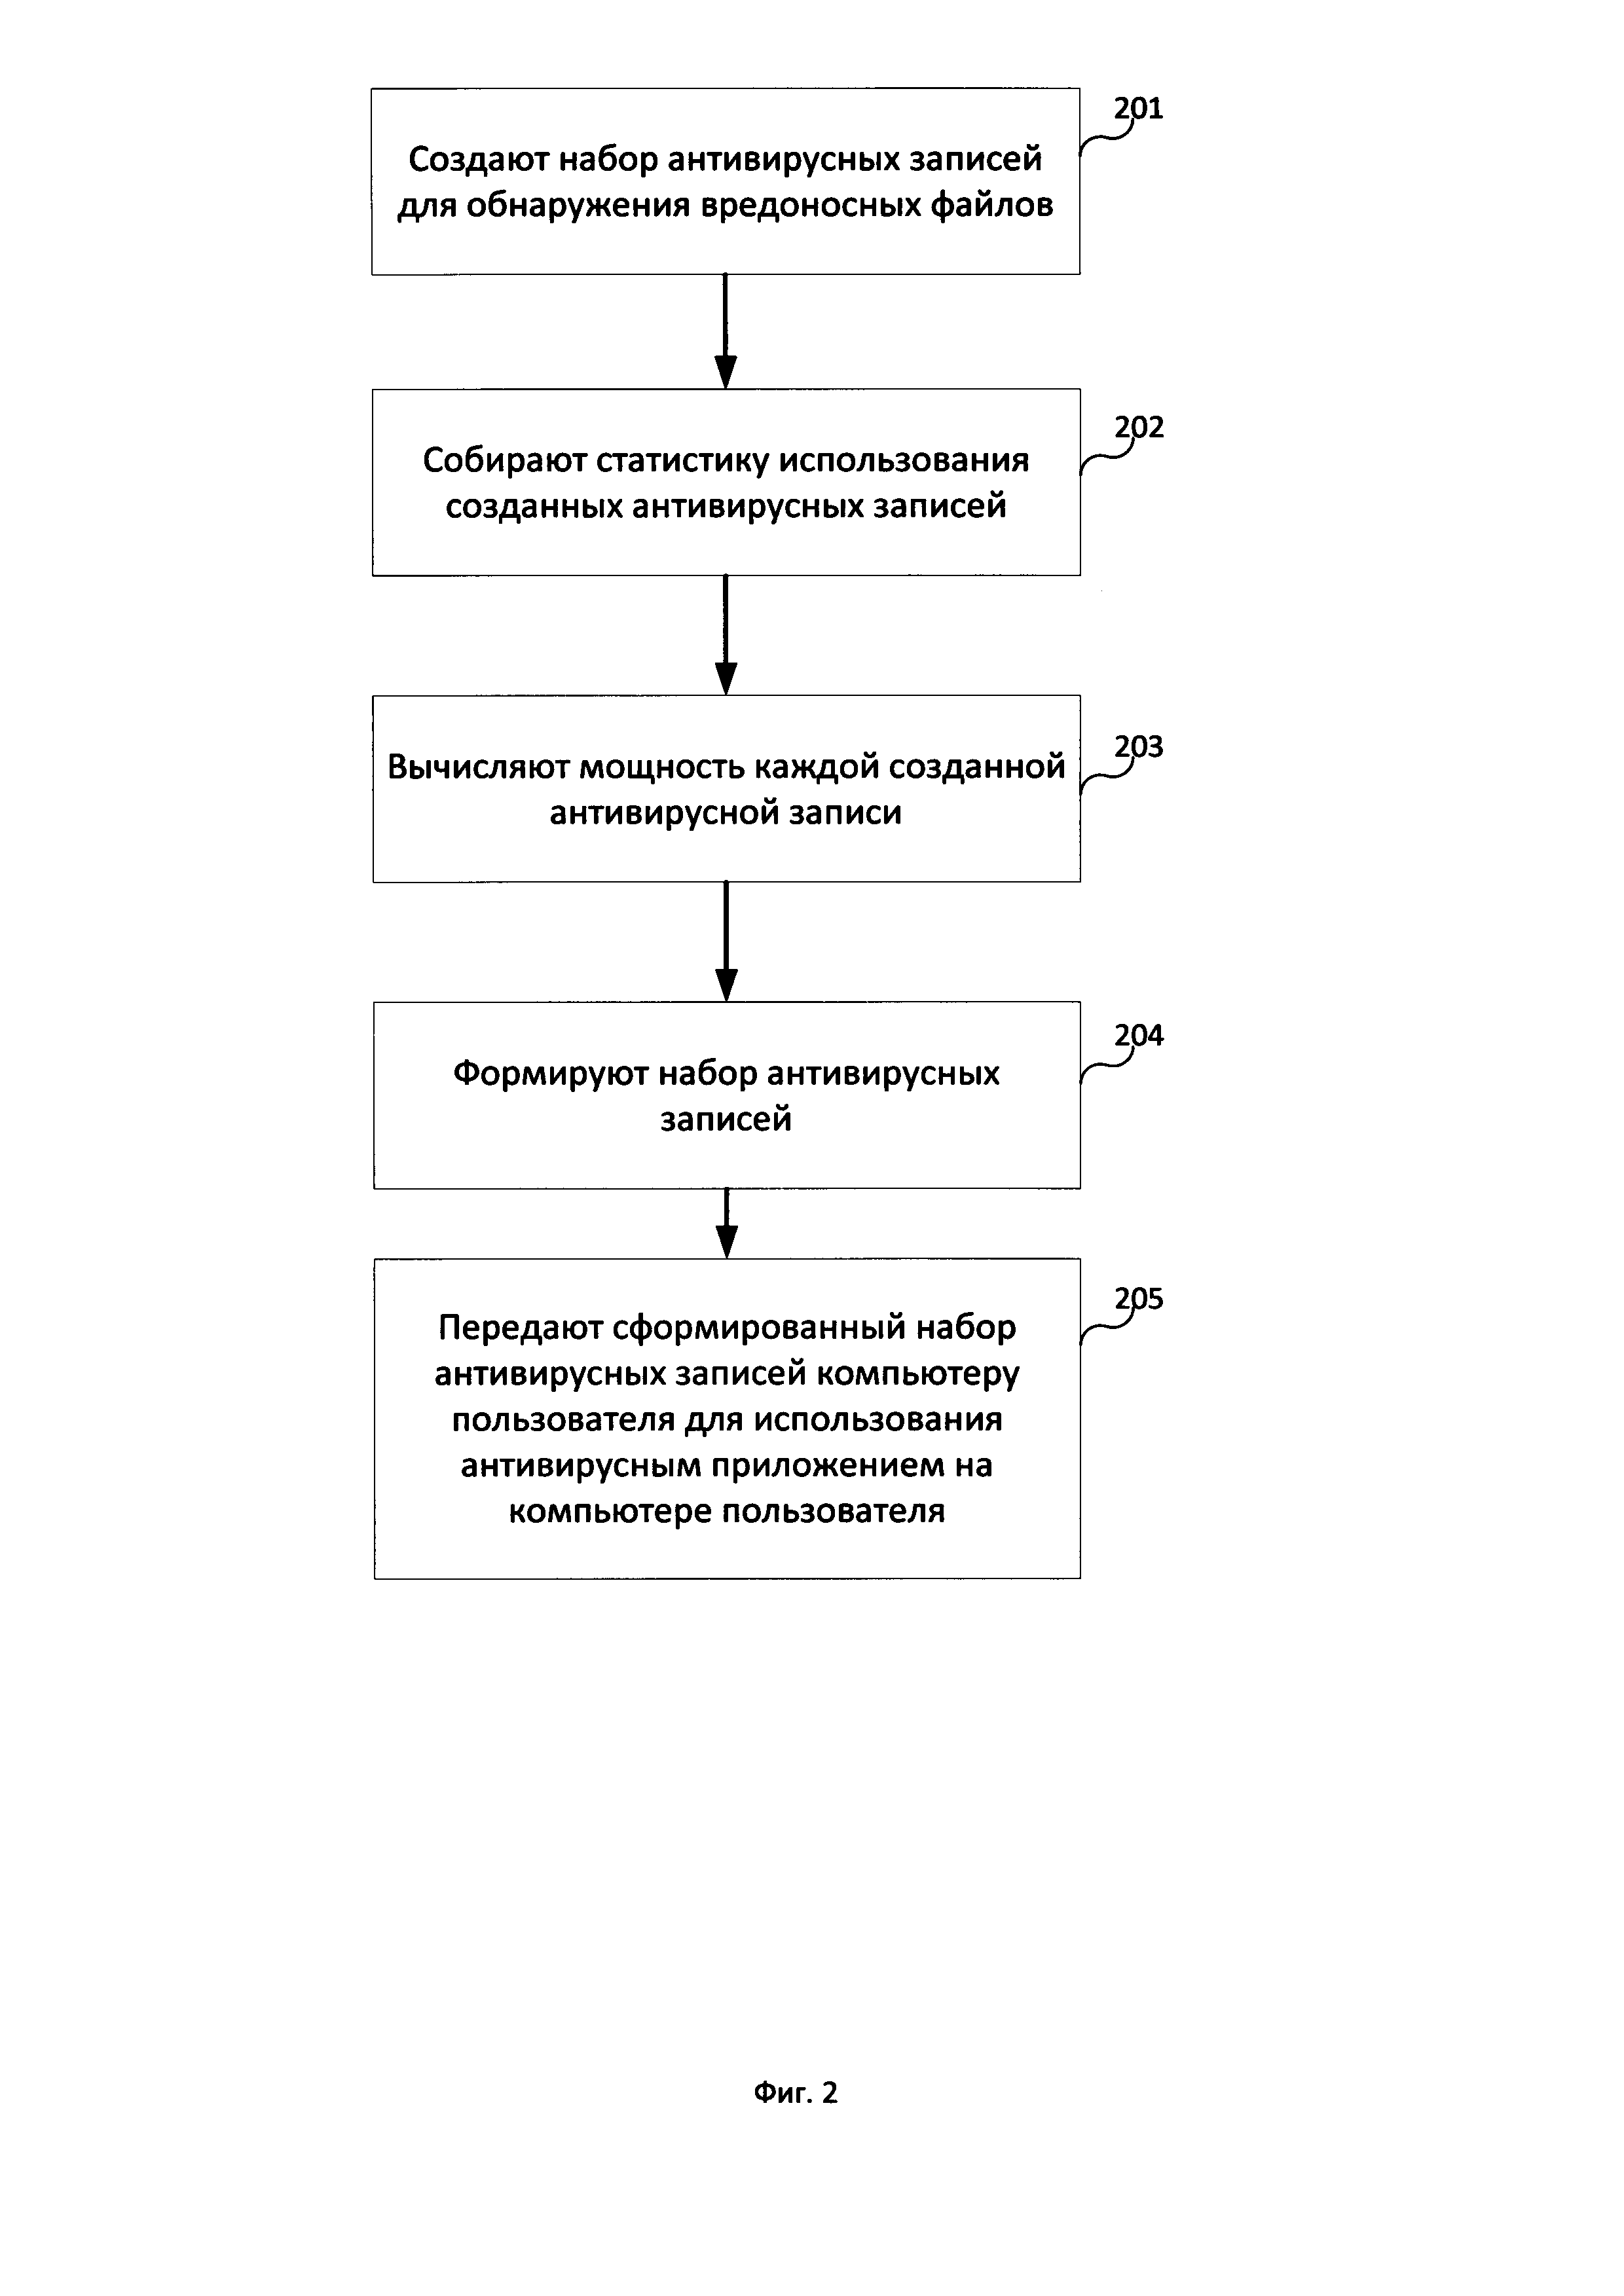 Система и способ формирования набора антивирусных записей, используемых для обнаружения вредоносных файлов на компьютере пользователя